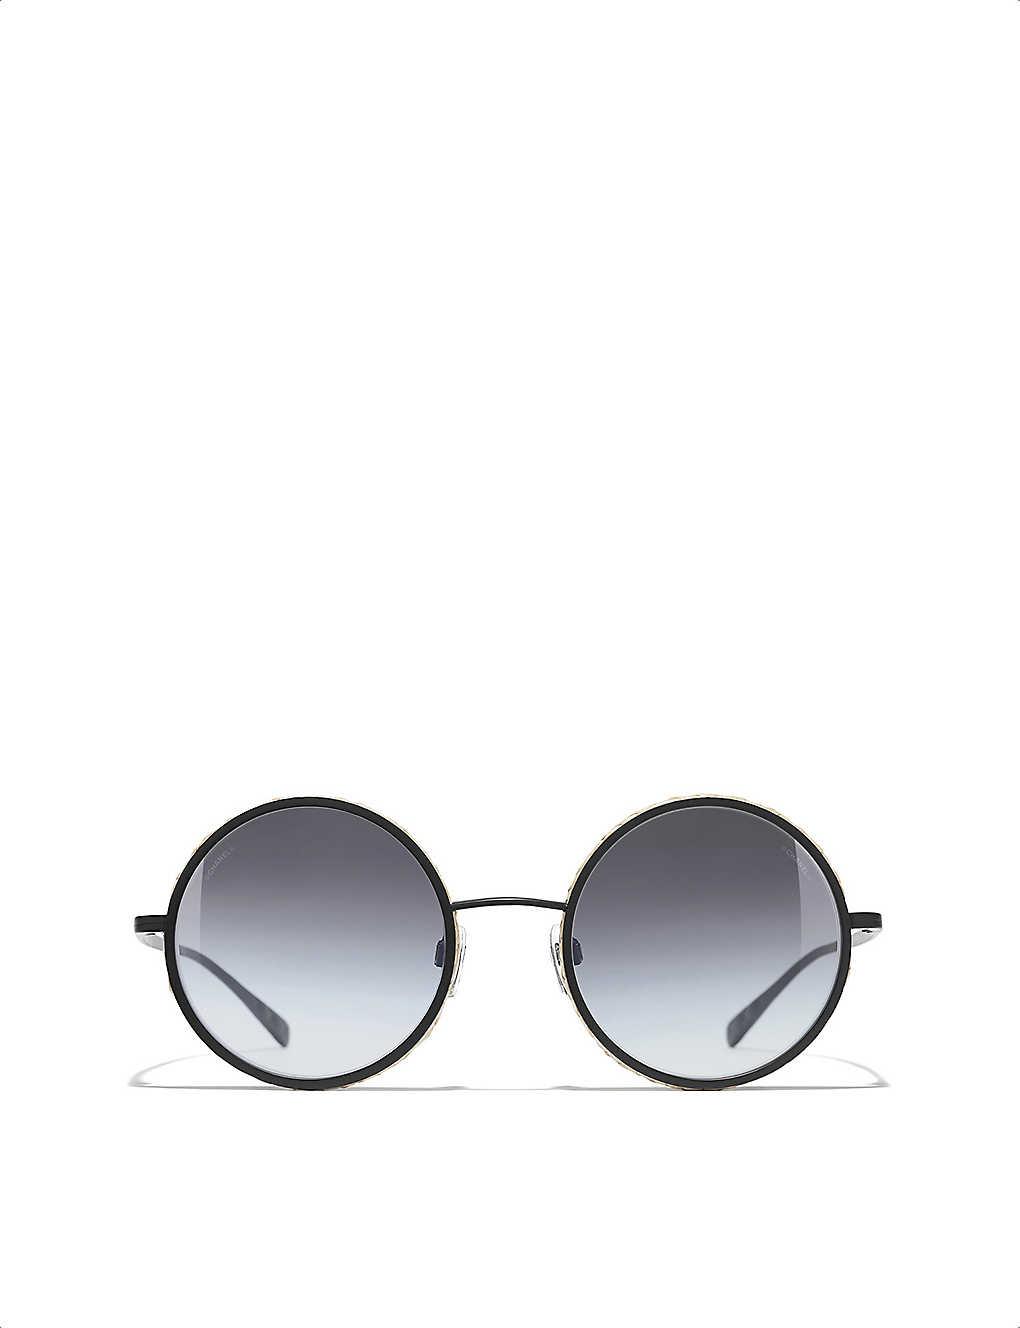 Chanel Round Sunglasses in Black